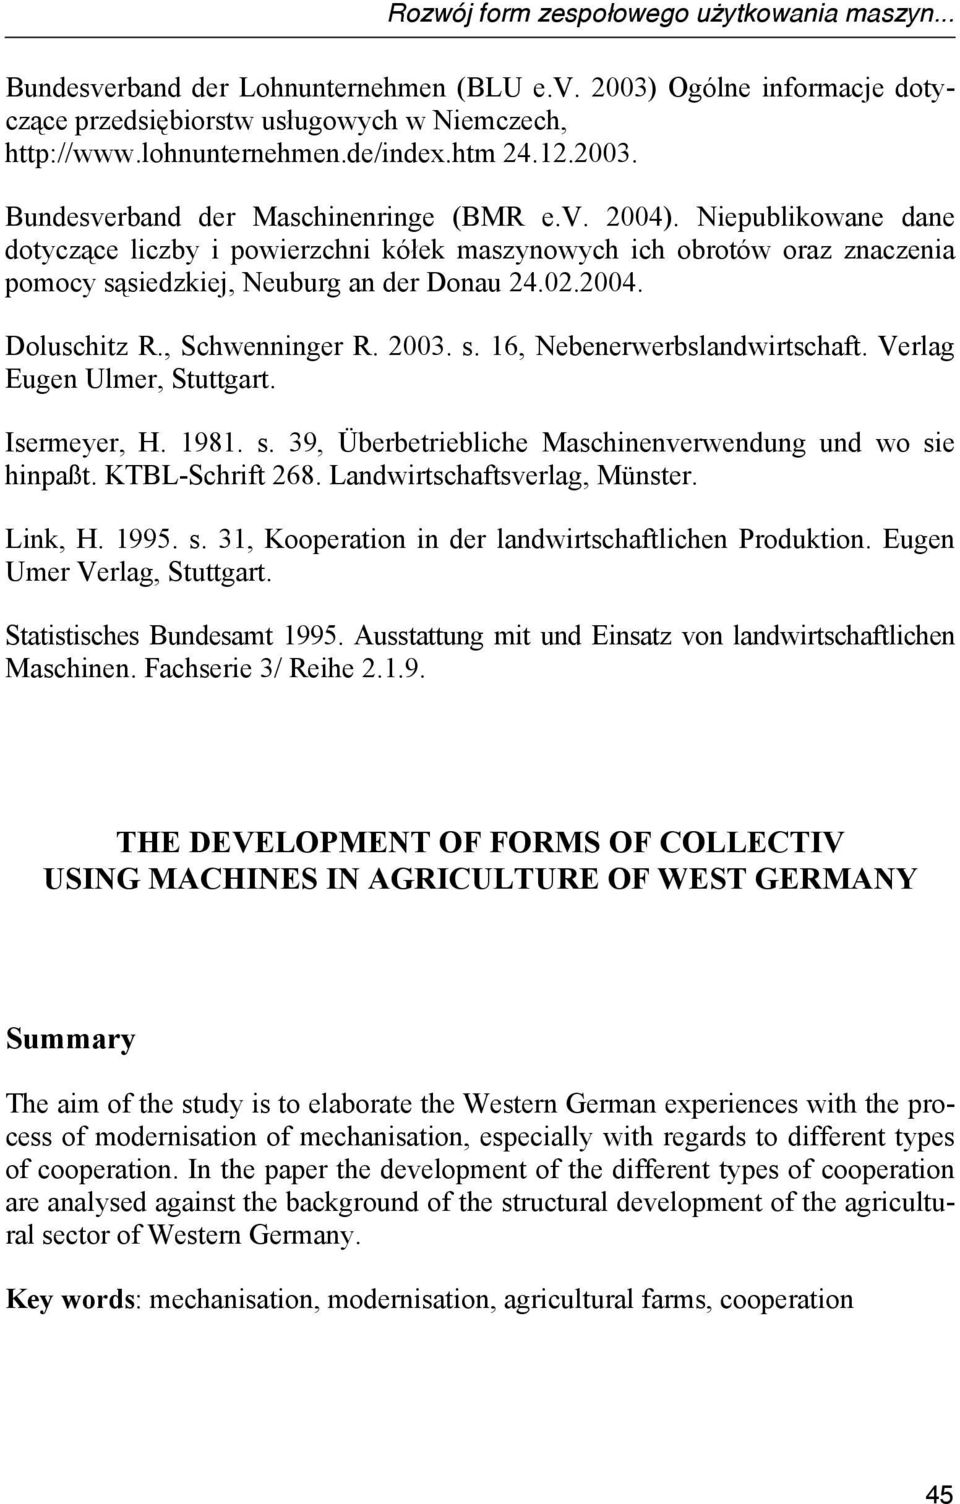 Niepublikowane dane dotyczące liczby i powierzchni kółek maszynowych ich obrotów oraz znaczenia pomocy sąsiedzkiej, Neuburg an der Donau 24.02.2004. Doluschitz R., Schwenninger R. 2003. s. 16, Nebenerwerbslandwirtschaft.